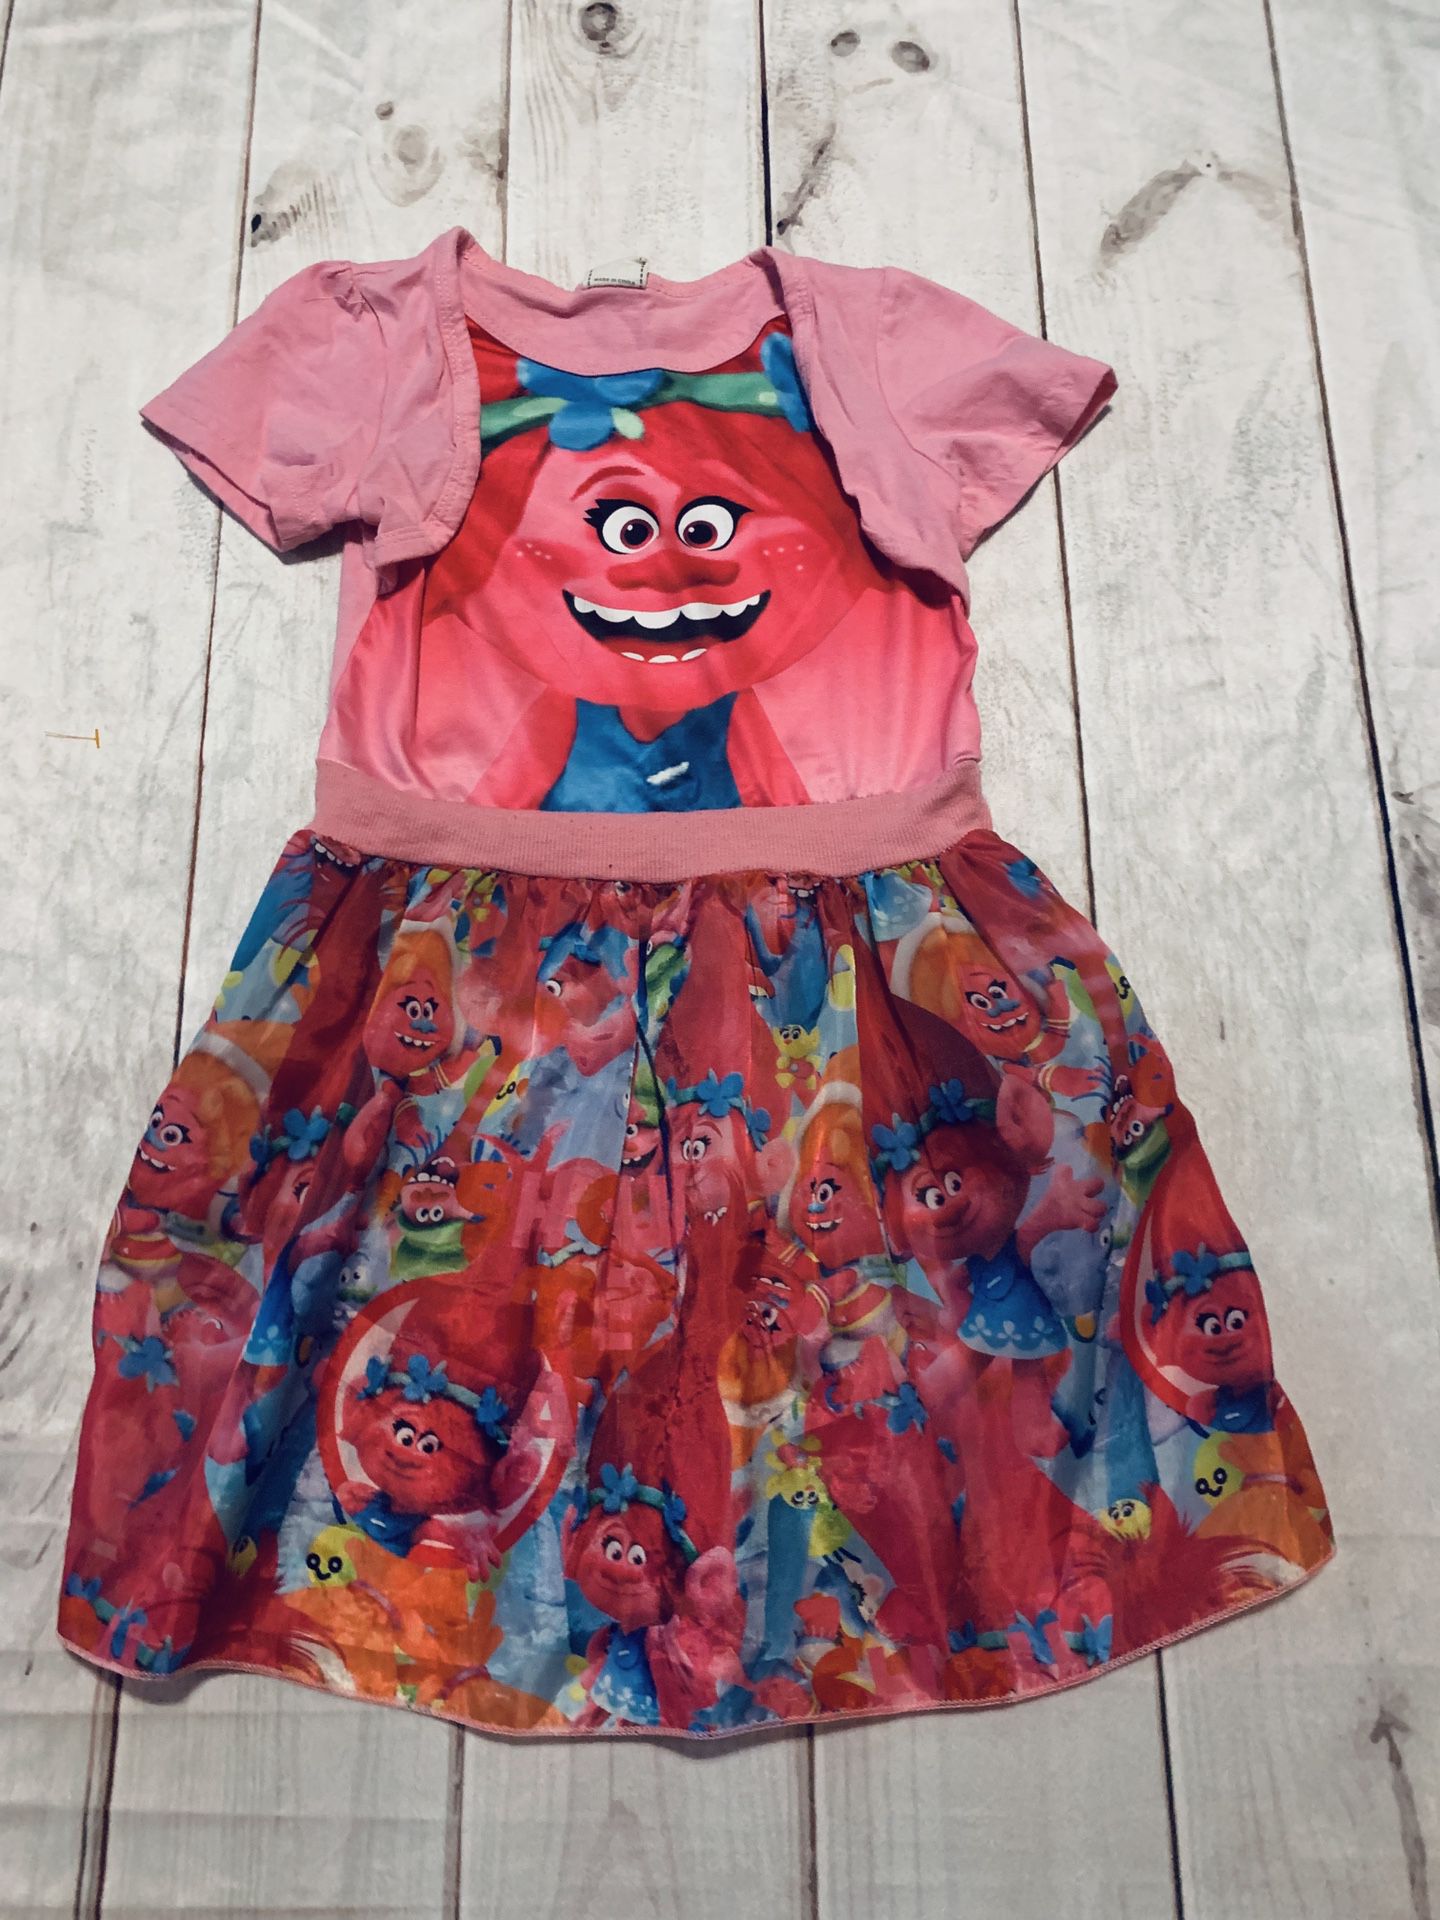 Cute Trolls Dress - Size 6